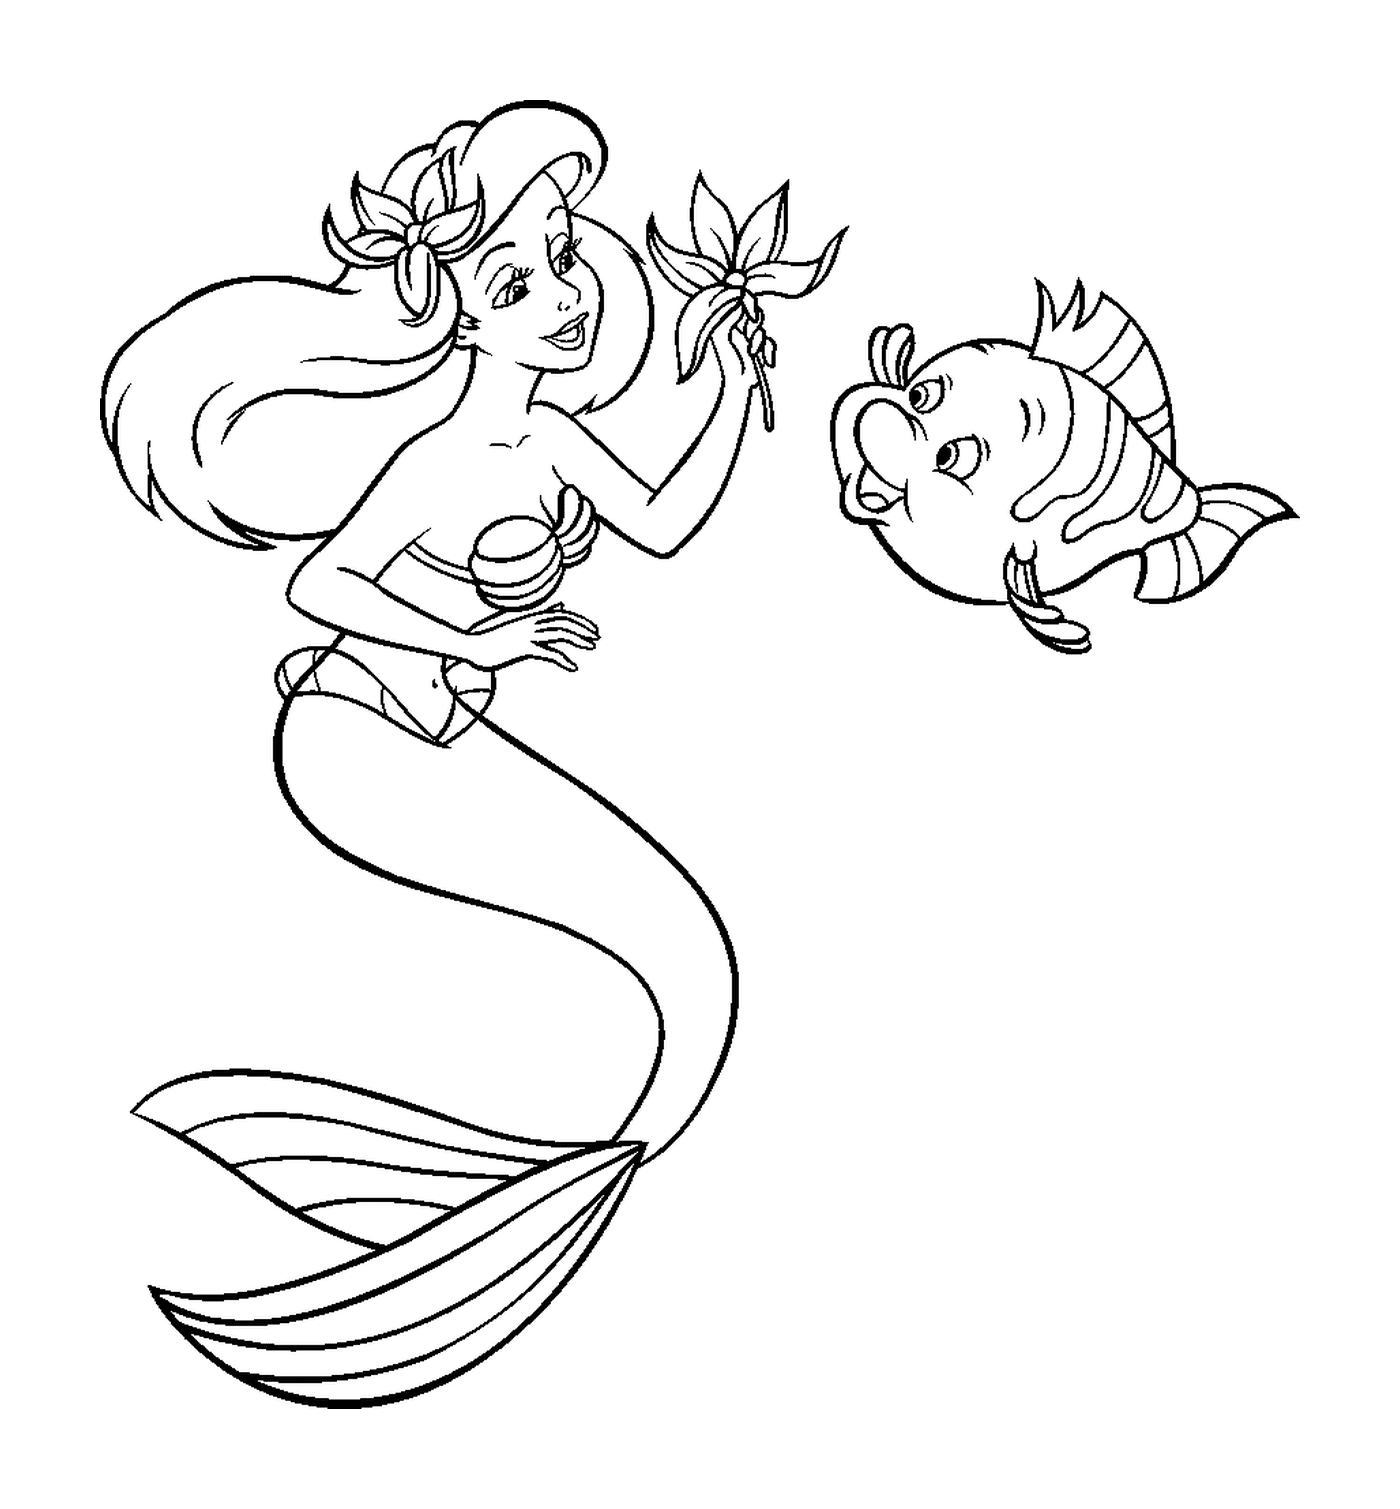  Uma sereia e um peixe 